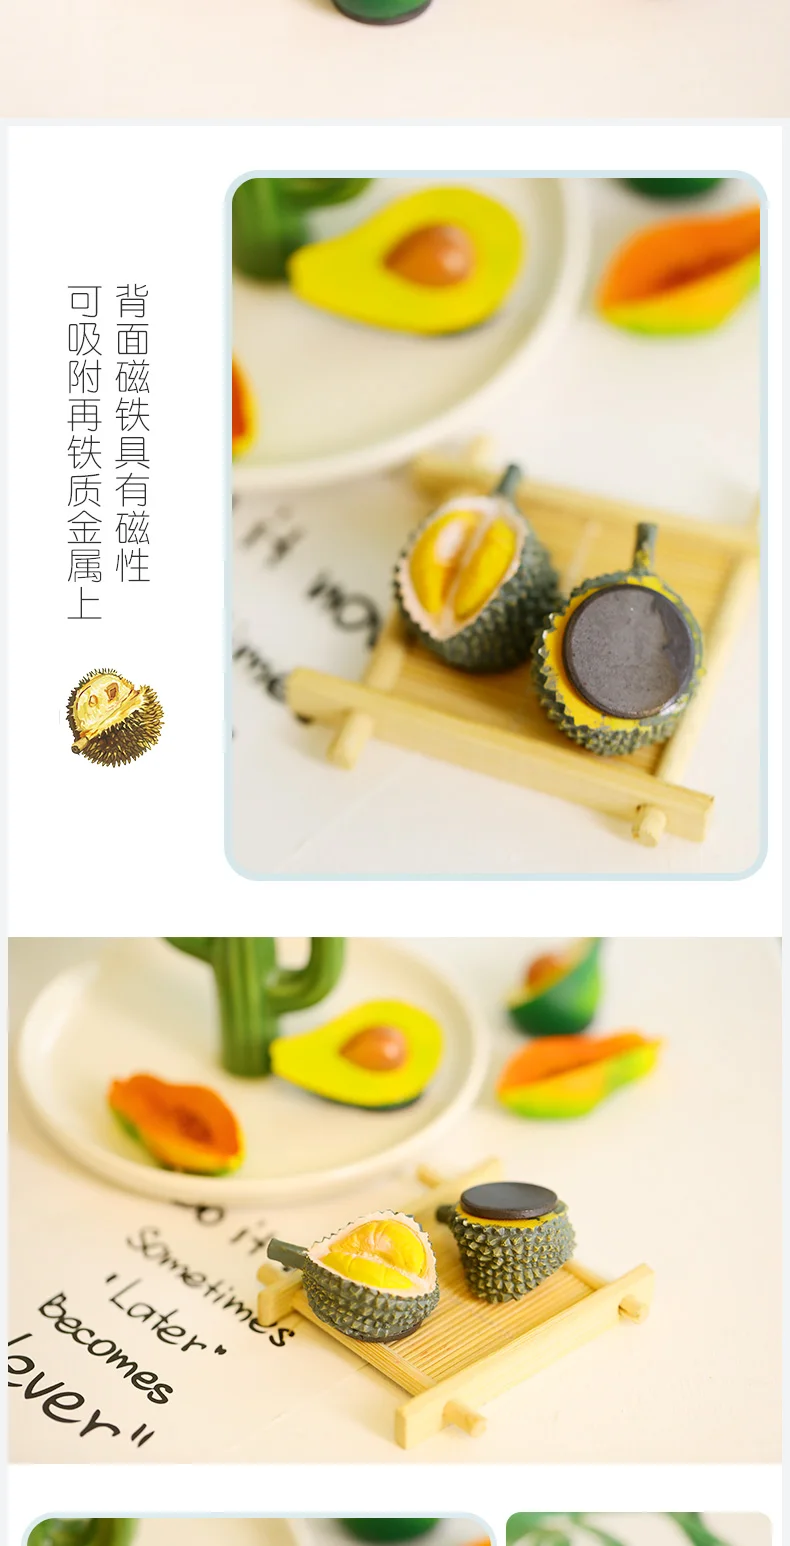 Креативный магнит на холодильник, мультяшный милый 3d Моделирование фруктов, папайя дуриан, магнит авокадо, декоративный магнит, украшение для дома